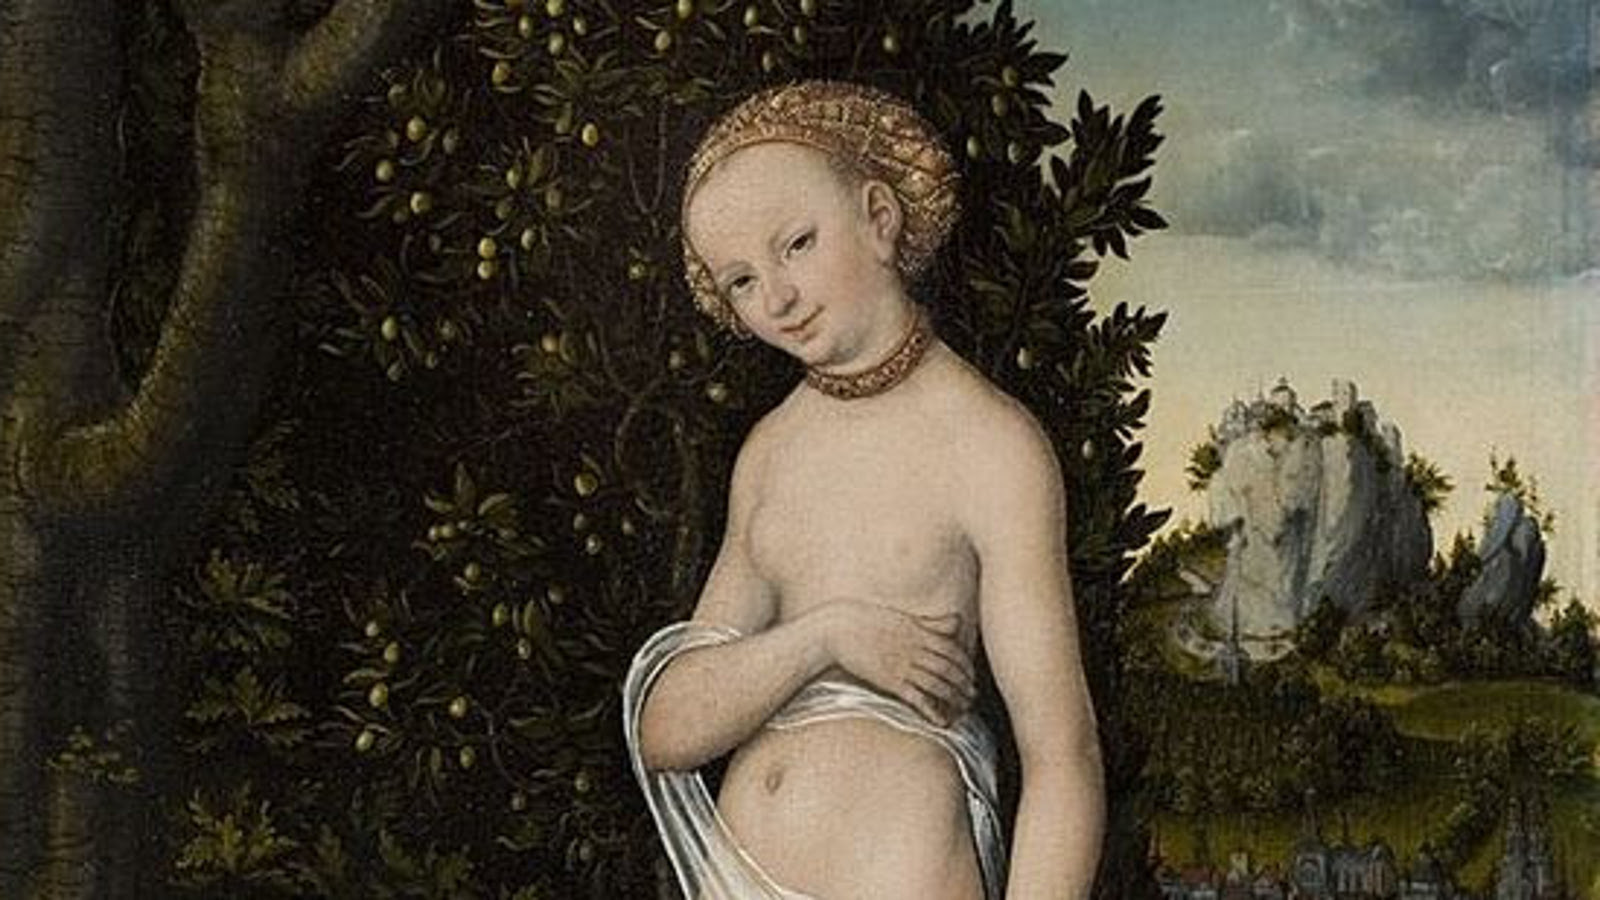 Kuvassa näkyy alastoman Venuksen kasvot ja taustalla on tumma lehtipuu, jossa on valkoisia kukkia.  Kauempana taustalla on kapealla kalliolla linna. 